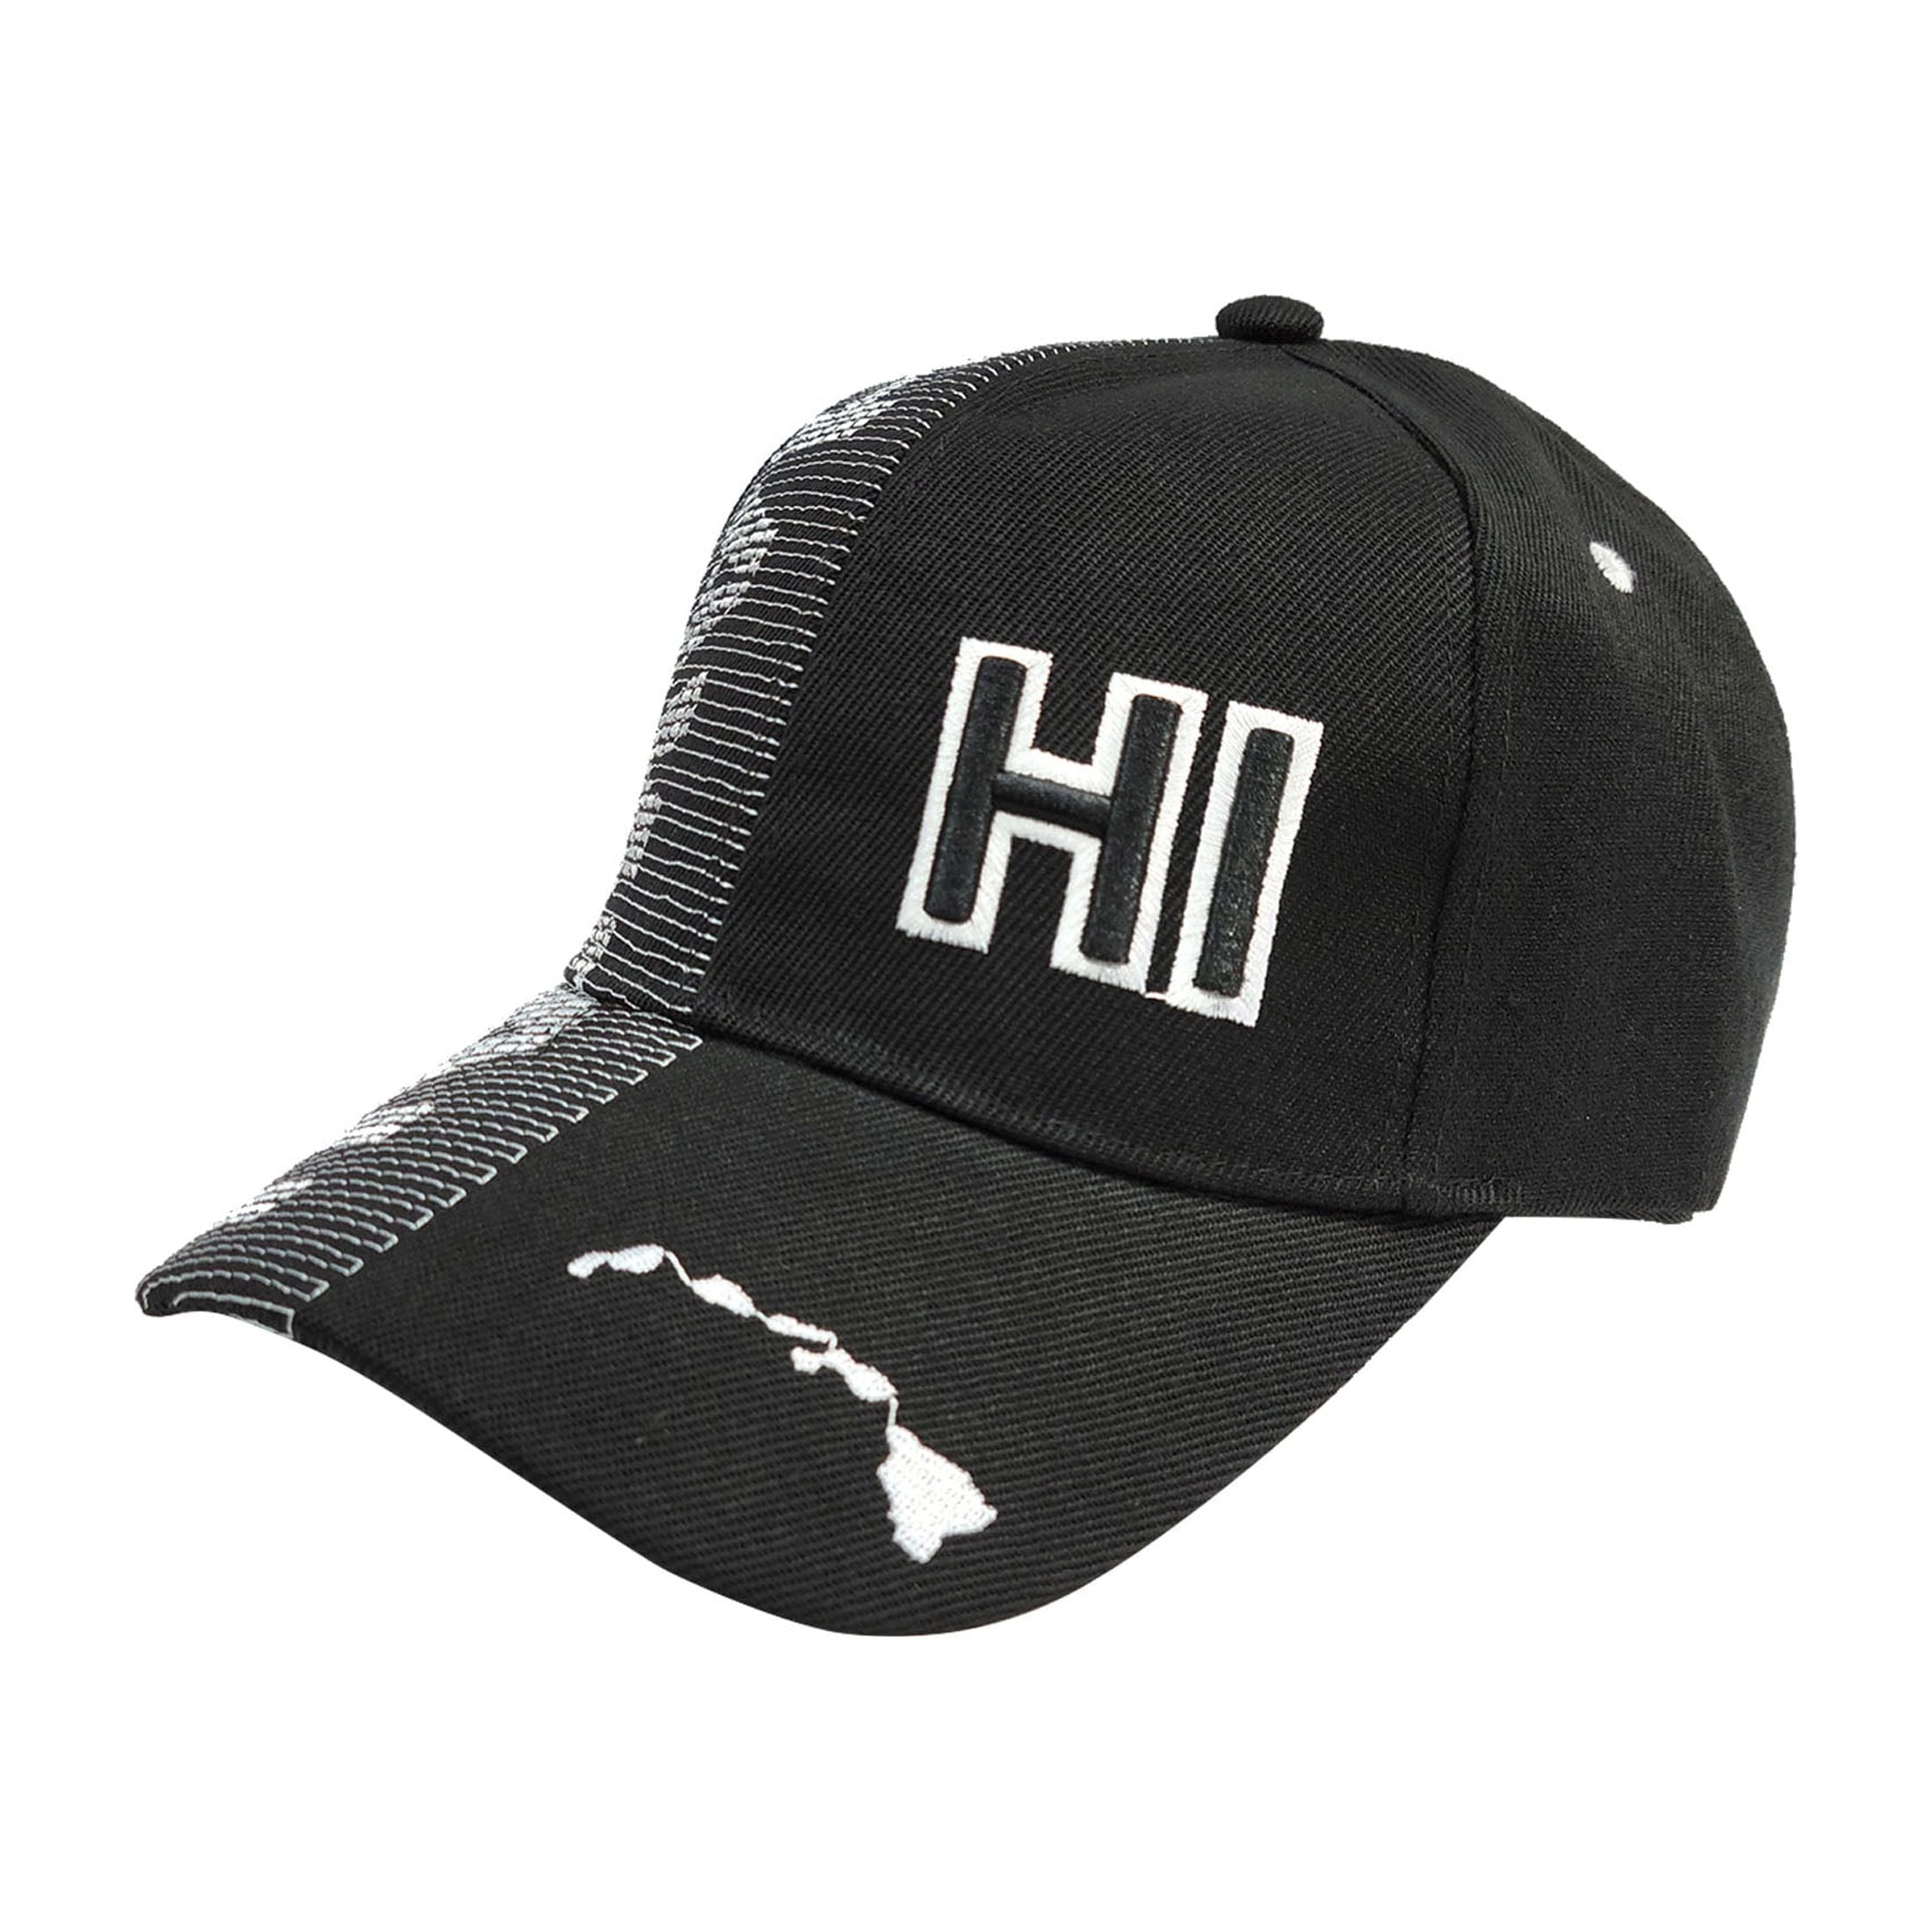 ISLAND CREW HAWAII CAP: Hi Hawaii W/ Island Logo, Black